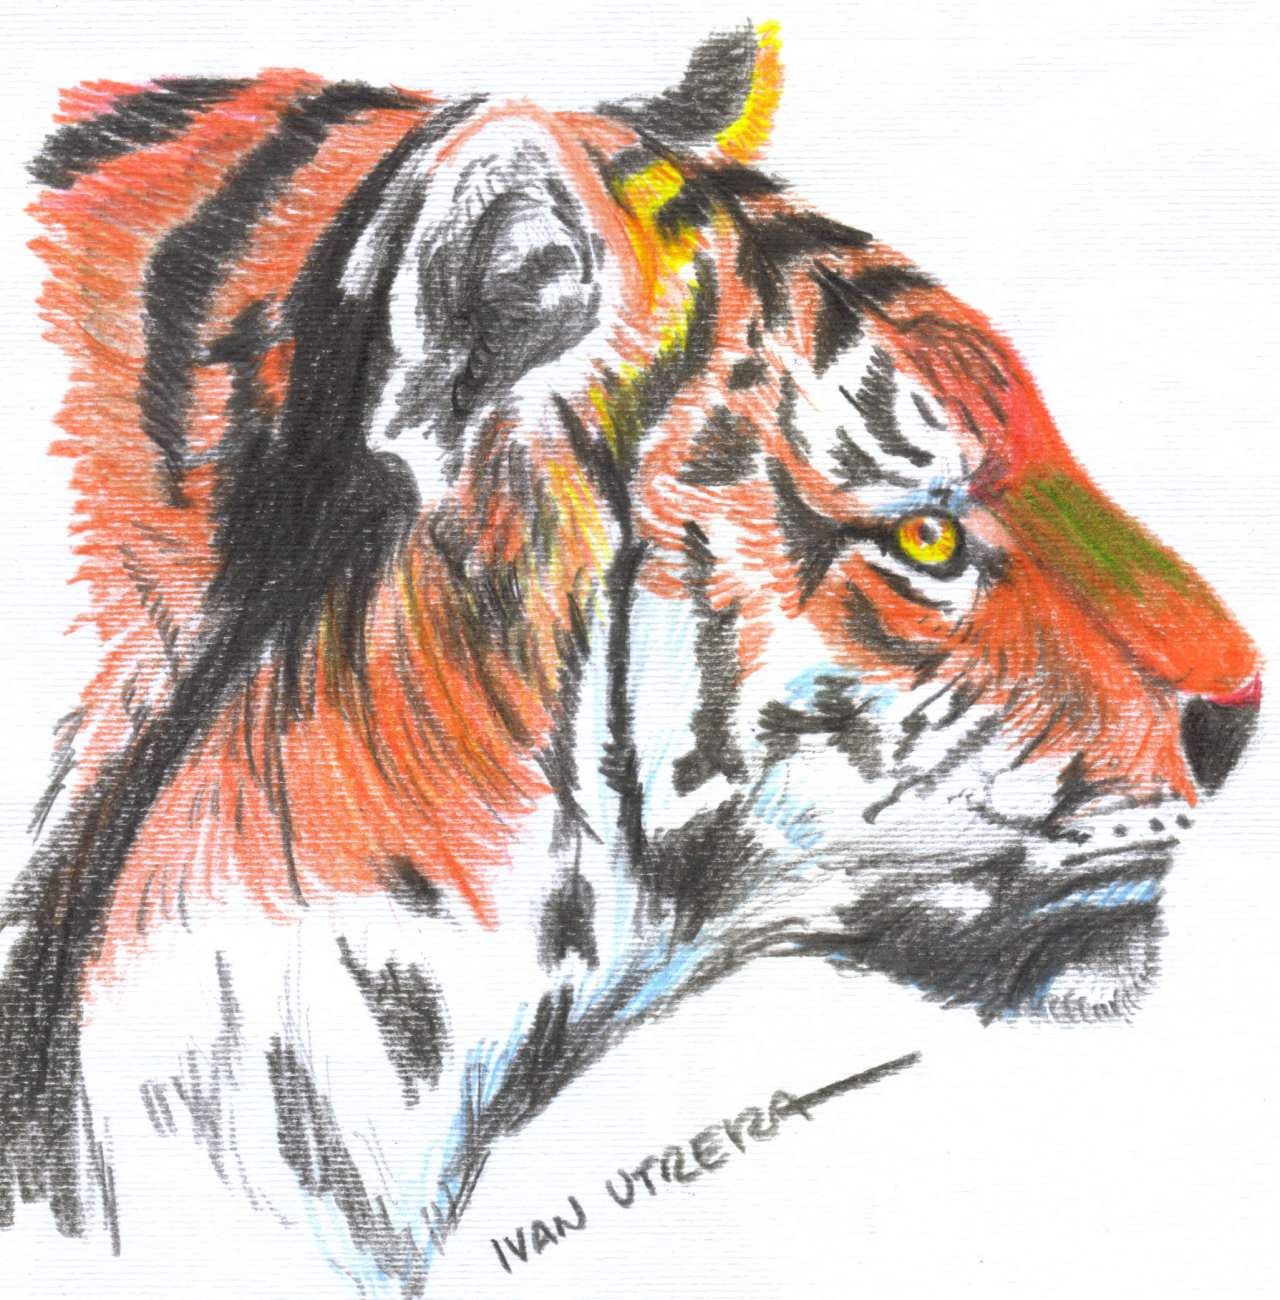 Ivan Utrera (dibujo de tigre en lapices de colores)